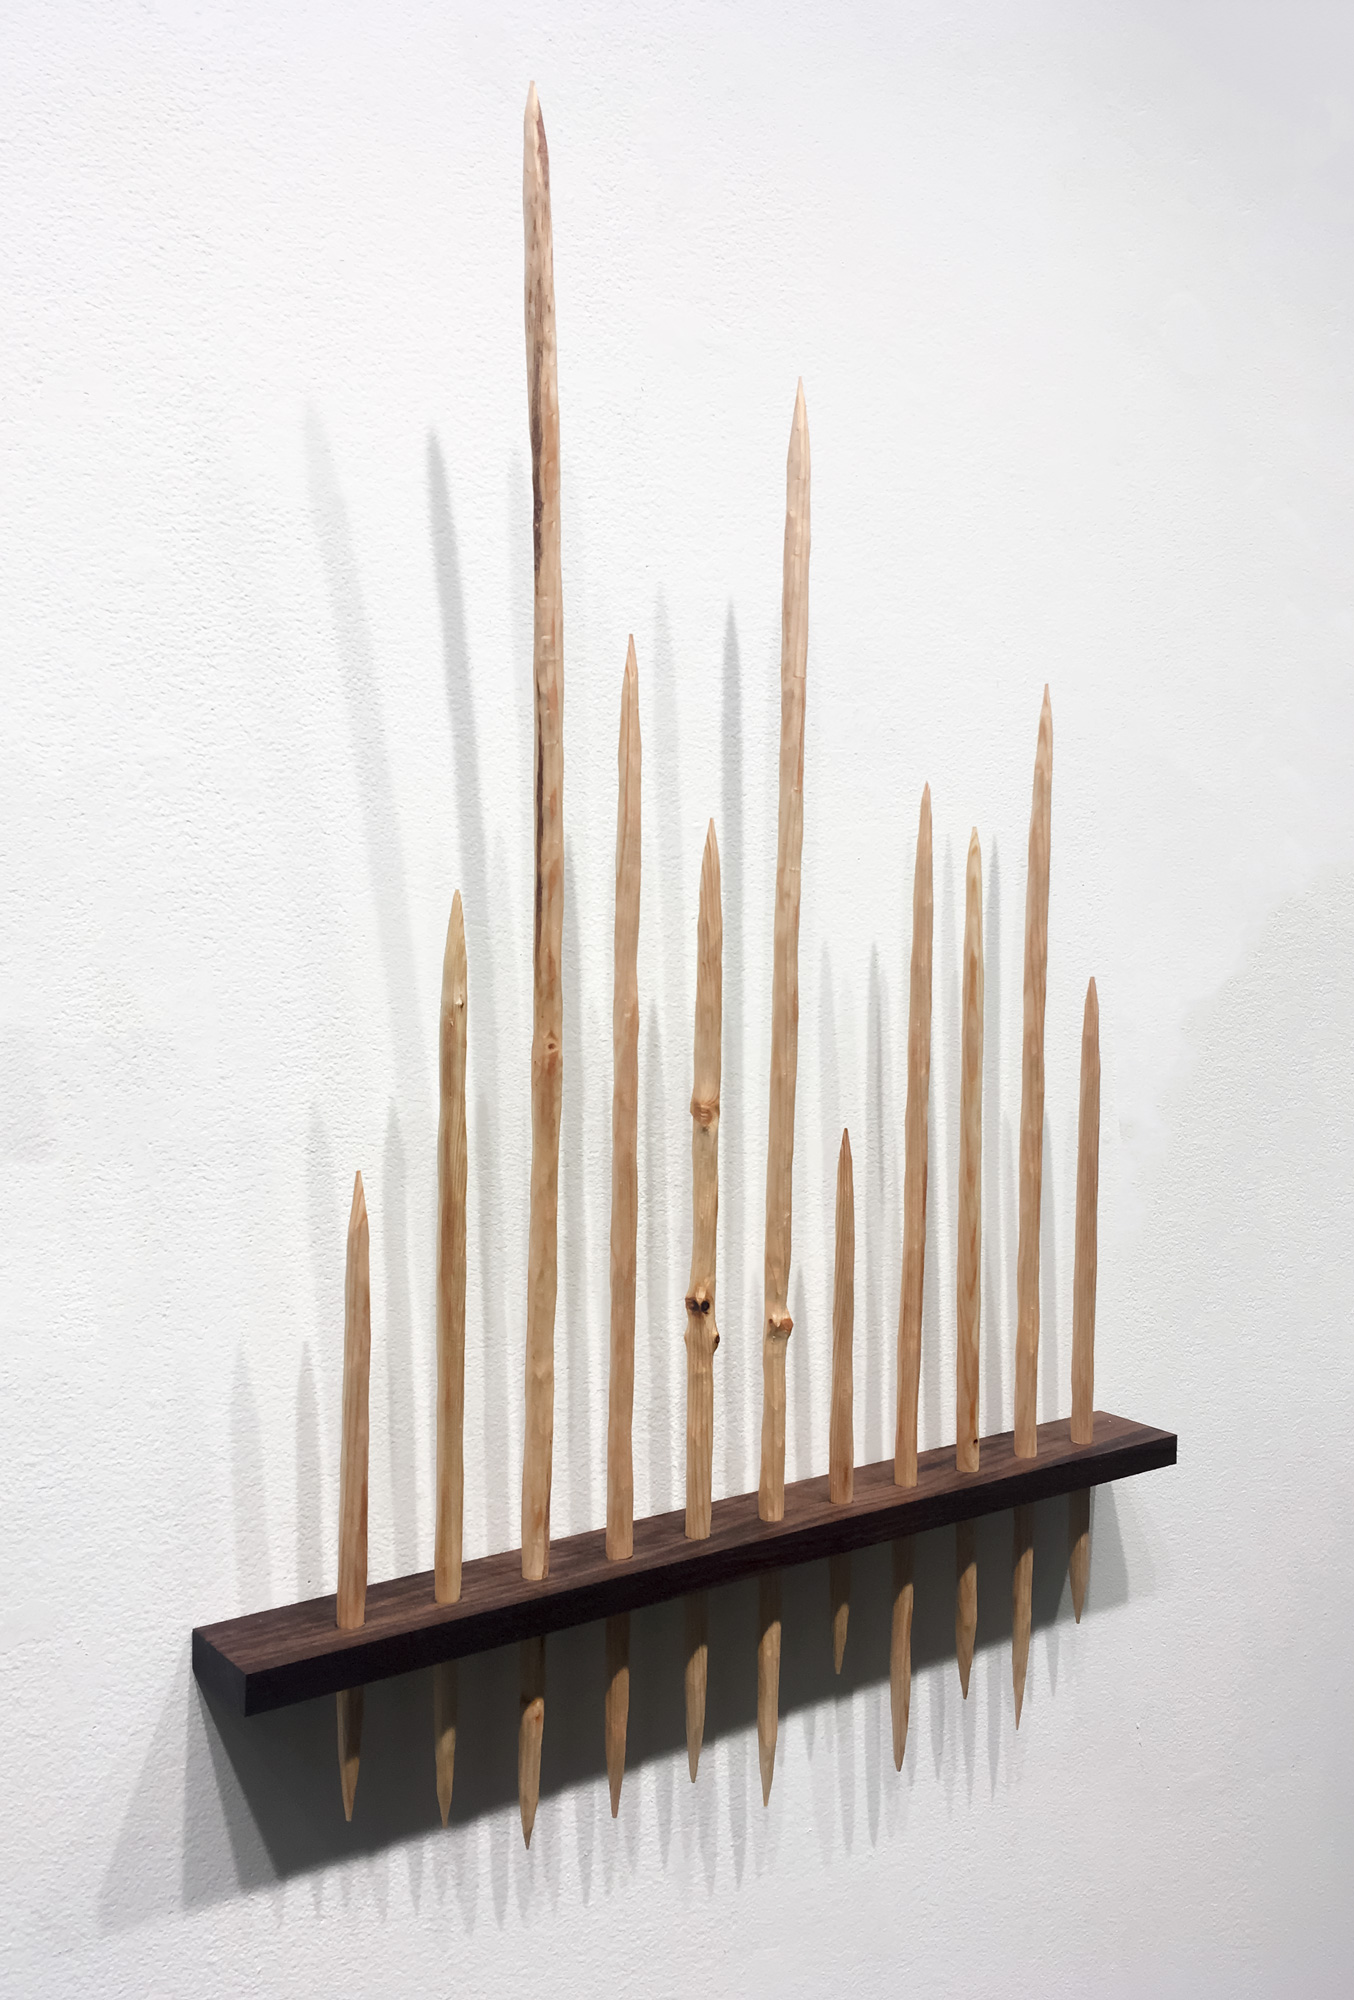 Taro Hattori, Small Sculpture Pieces